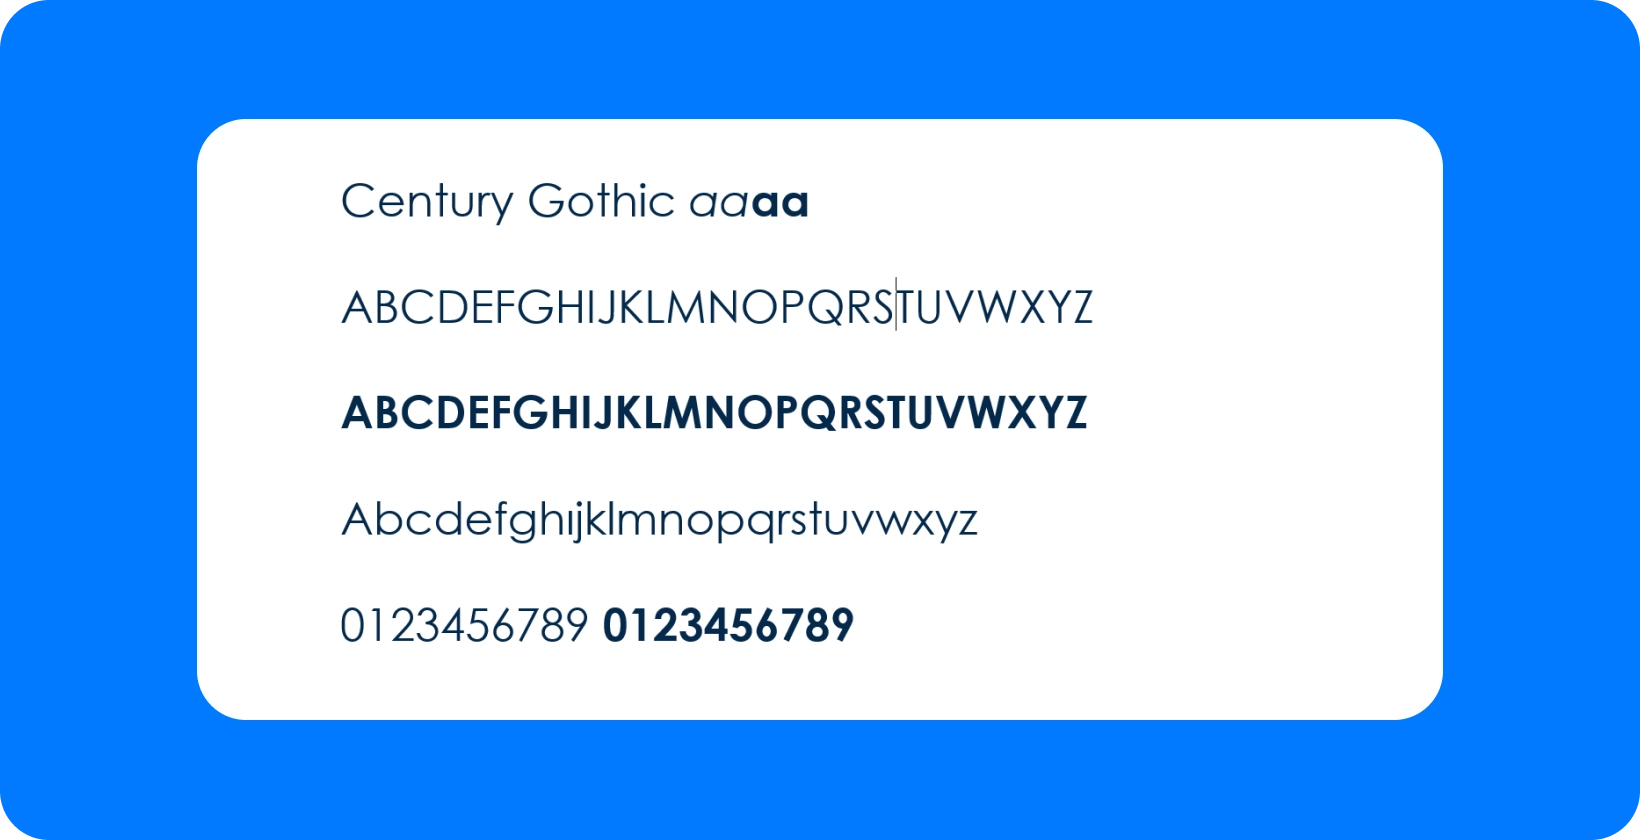 Il font Century Gothic offre un aspetto moderno e geometrico per i sottotitoli, perfetto per la leggibilità su YouTube e Premiere Pro.